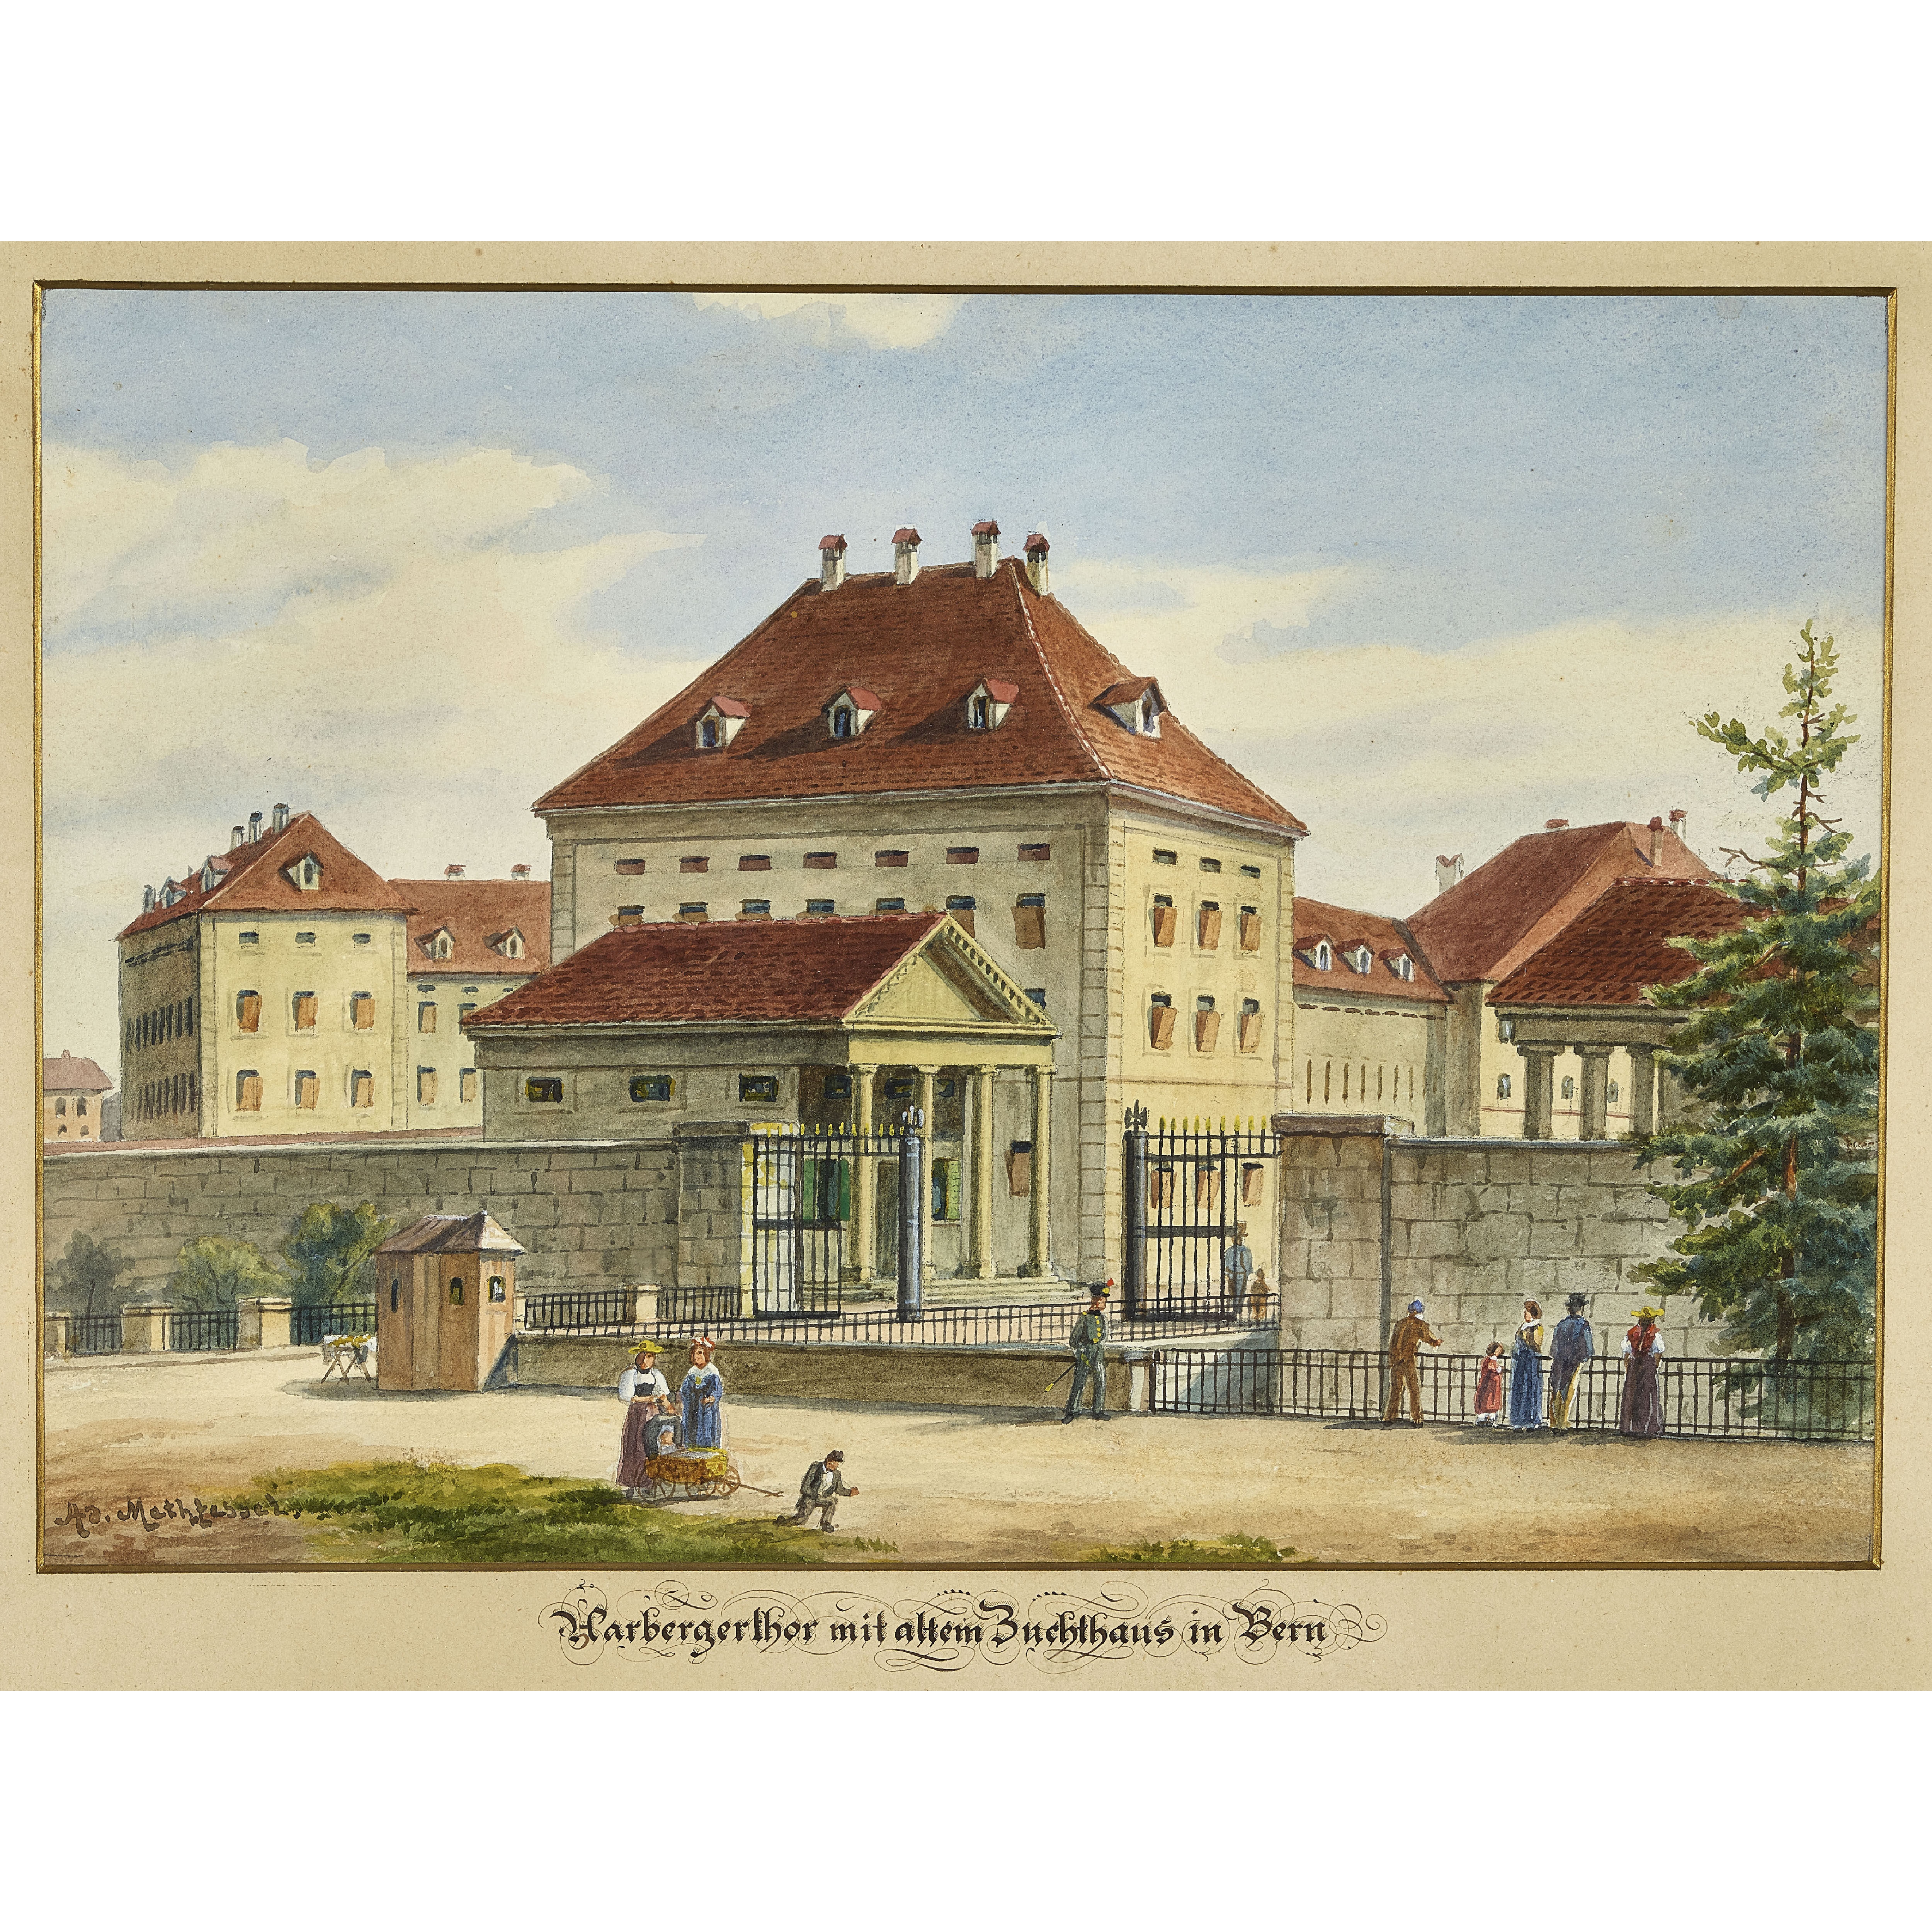 Aarbergerthor mit altem Zuchthaus in Bern by Adolfo Methfessel